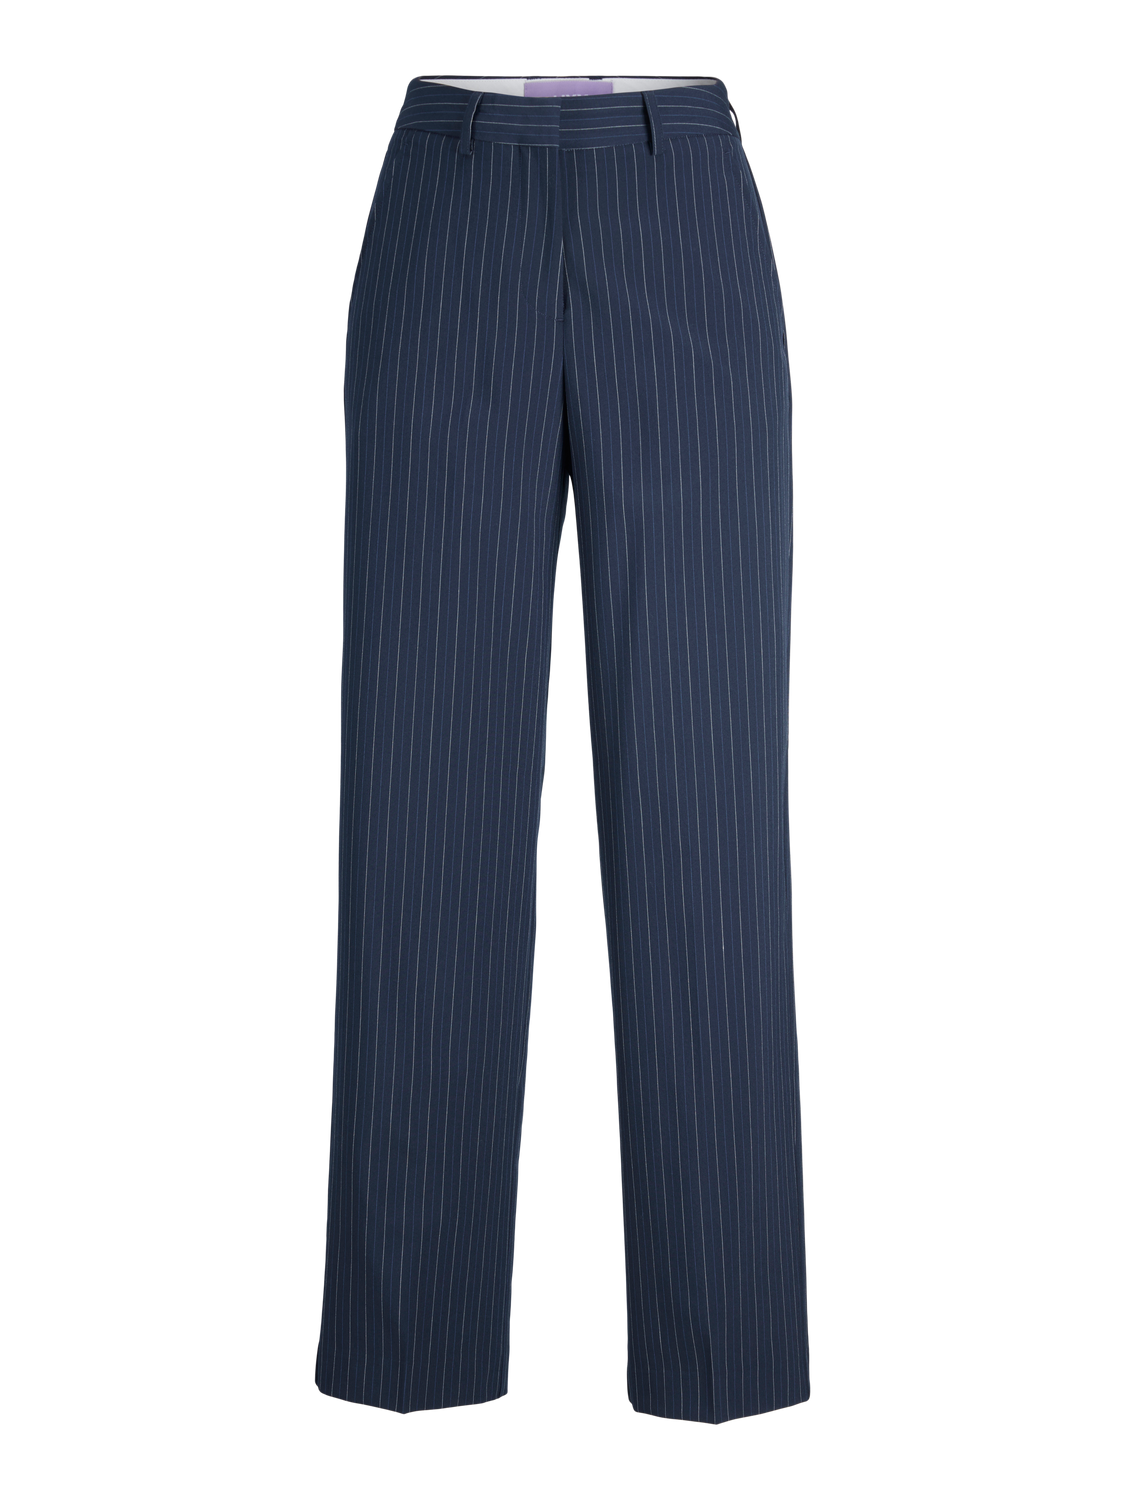 JJXX JXMARY Classic trousers -Navy Blazer - 12209070